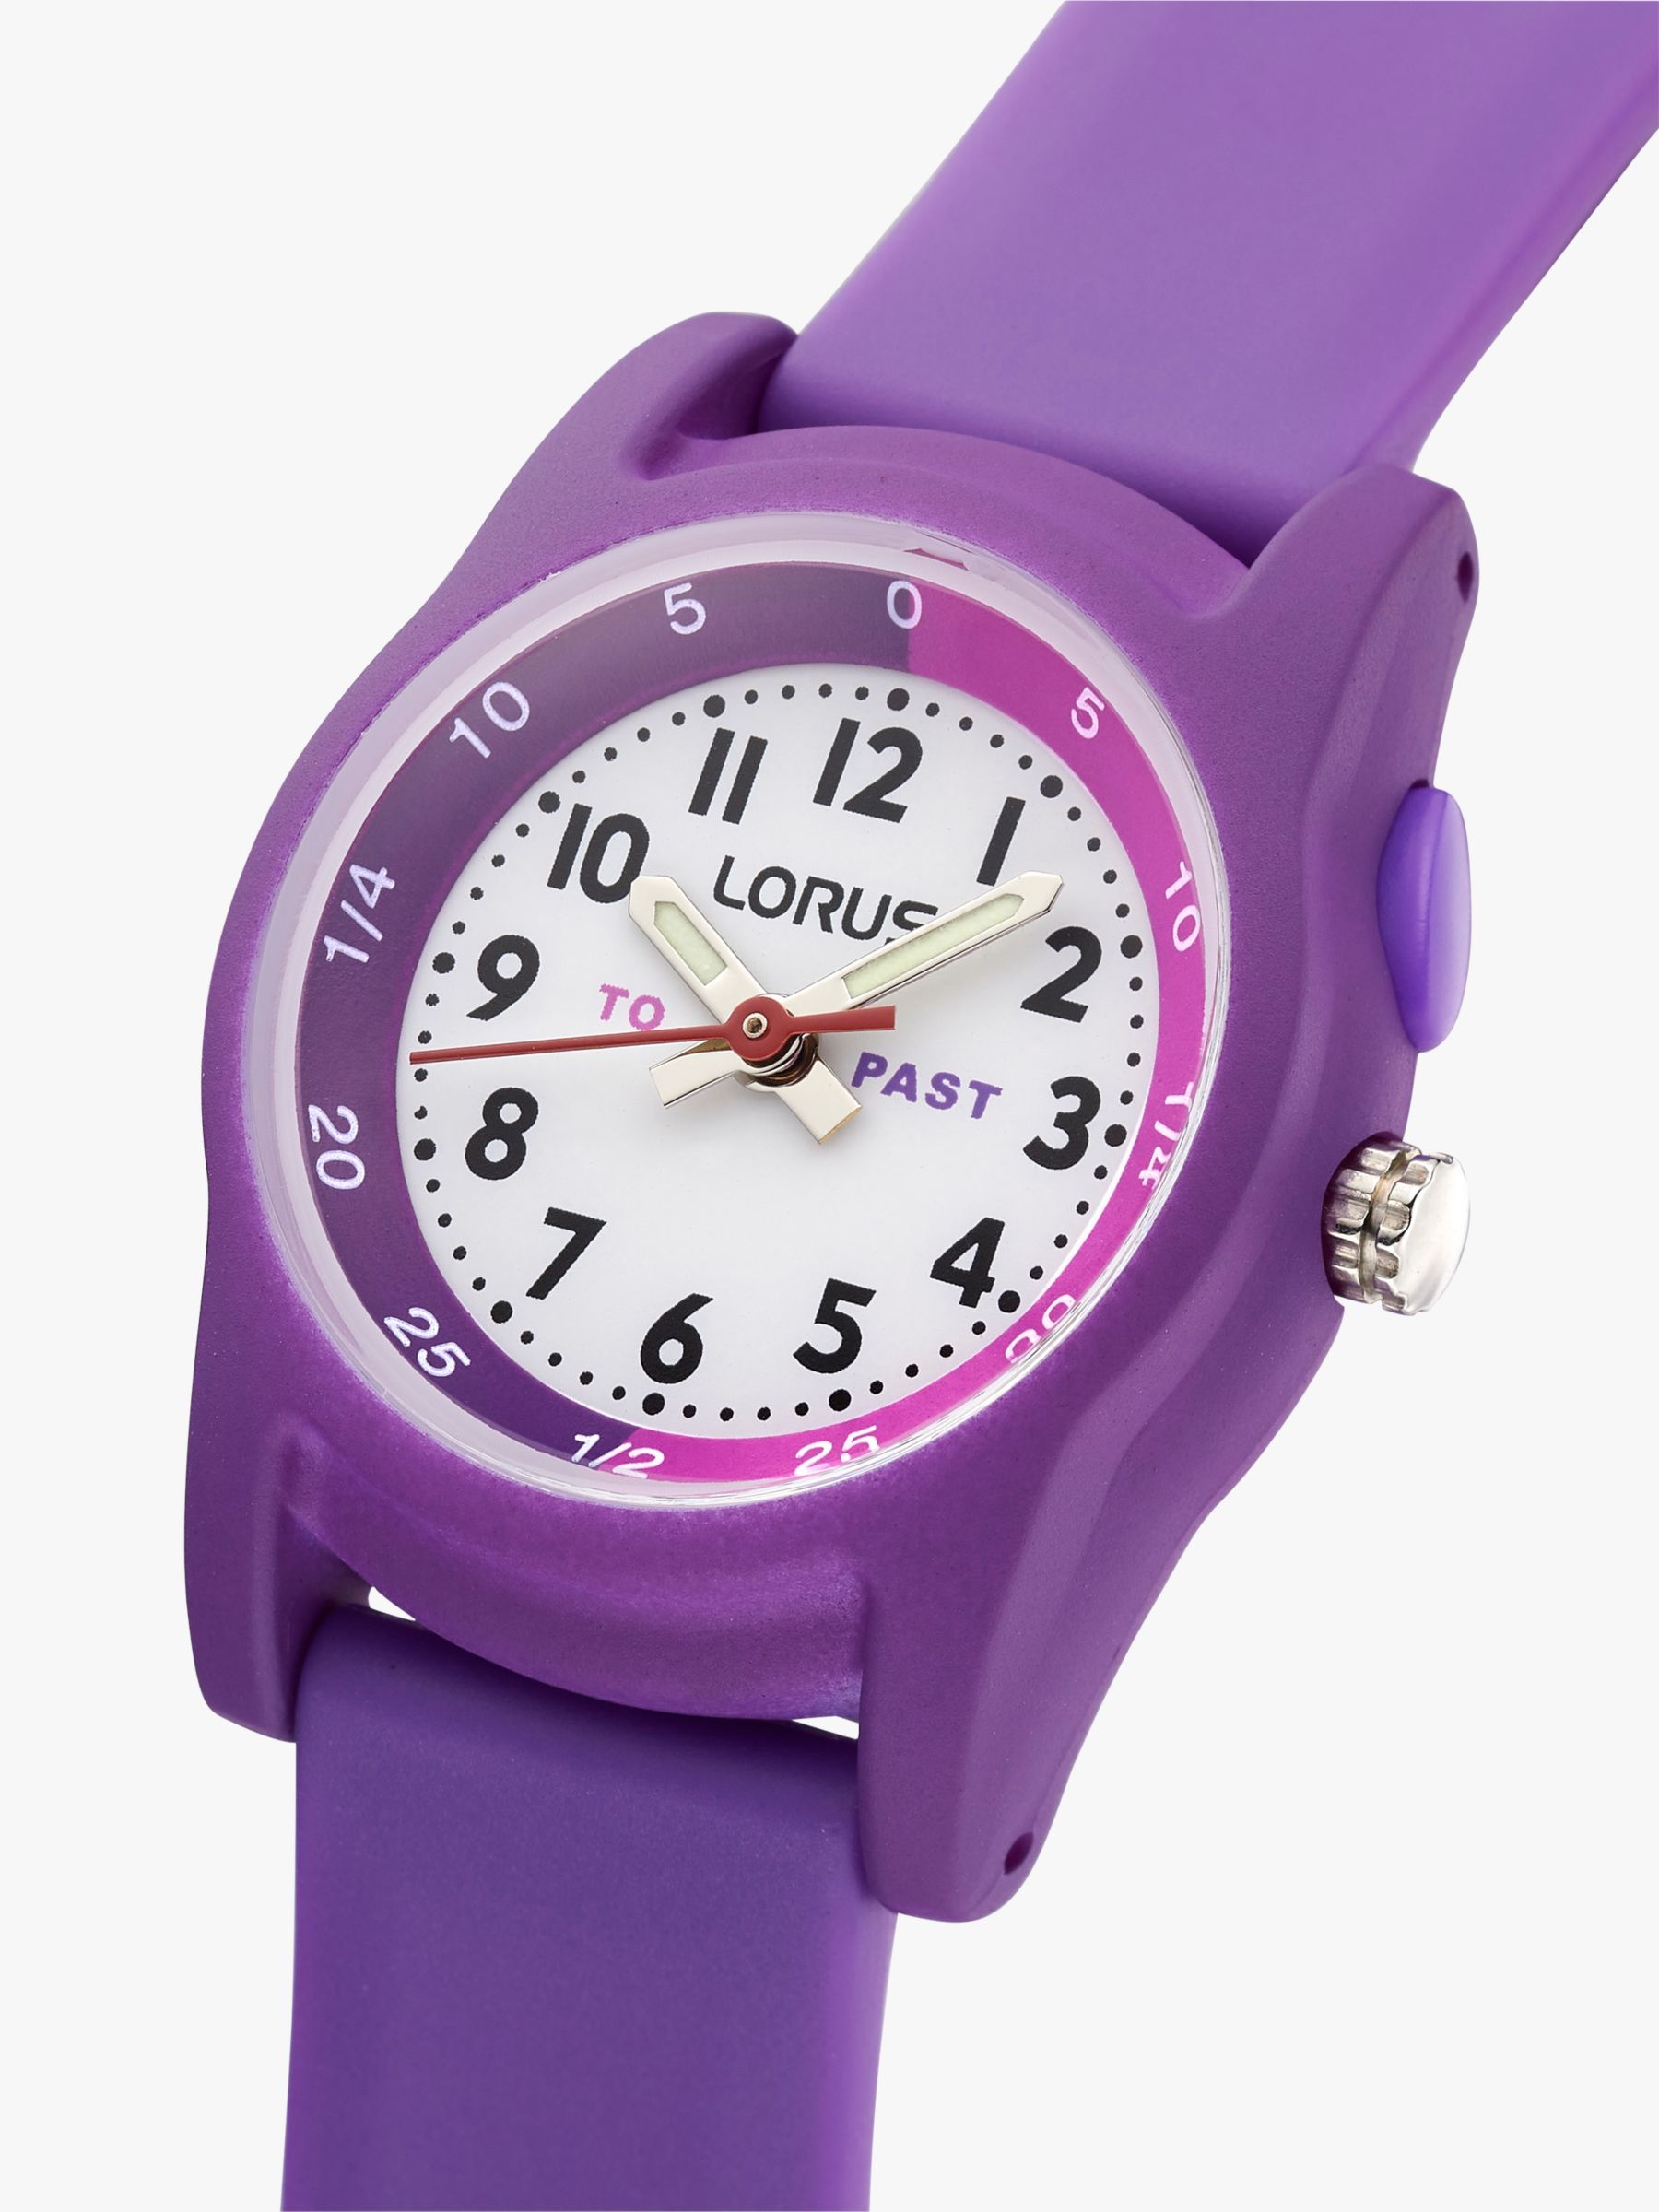 Buy Lorus Children's Silicone Strap Watch Online at johnlewis.com